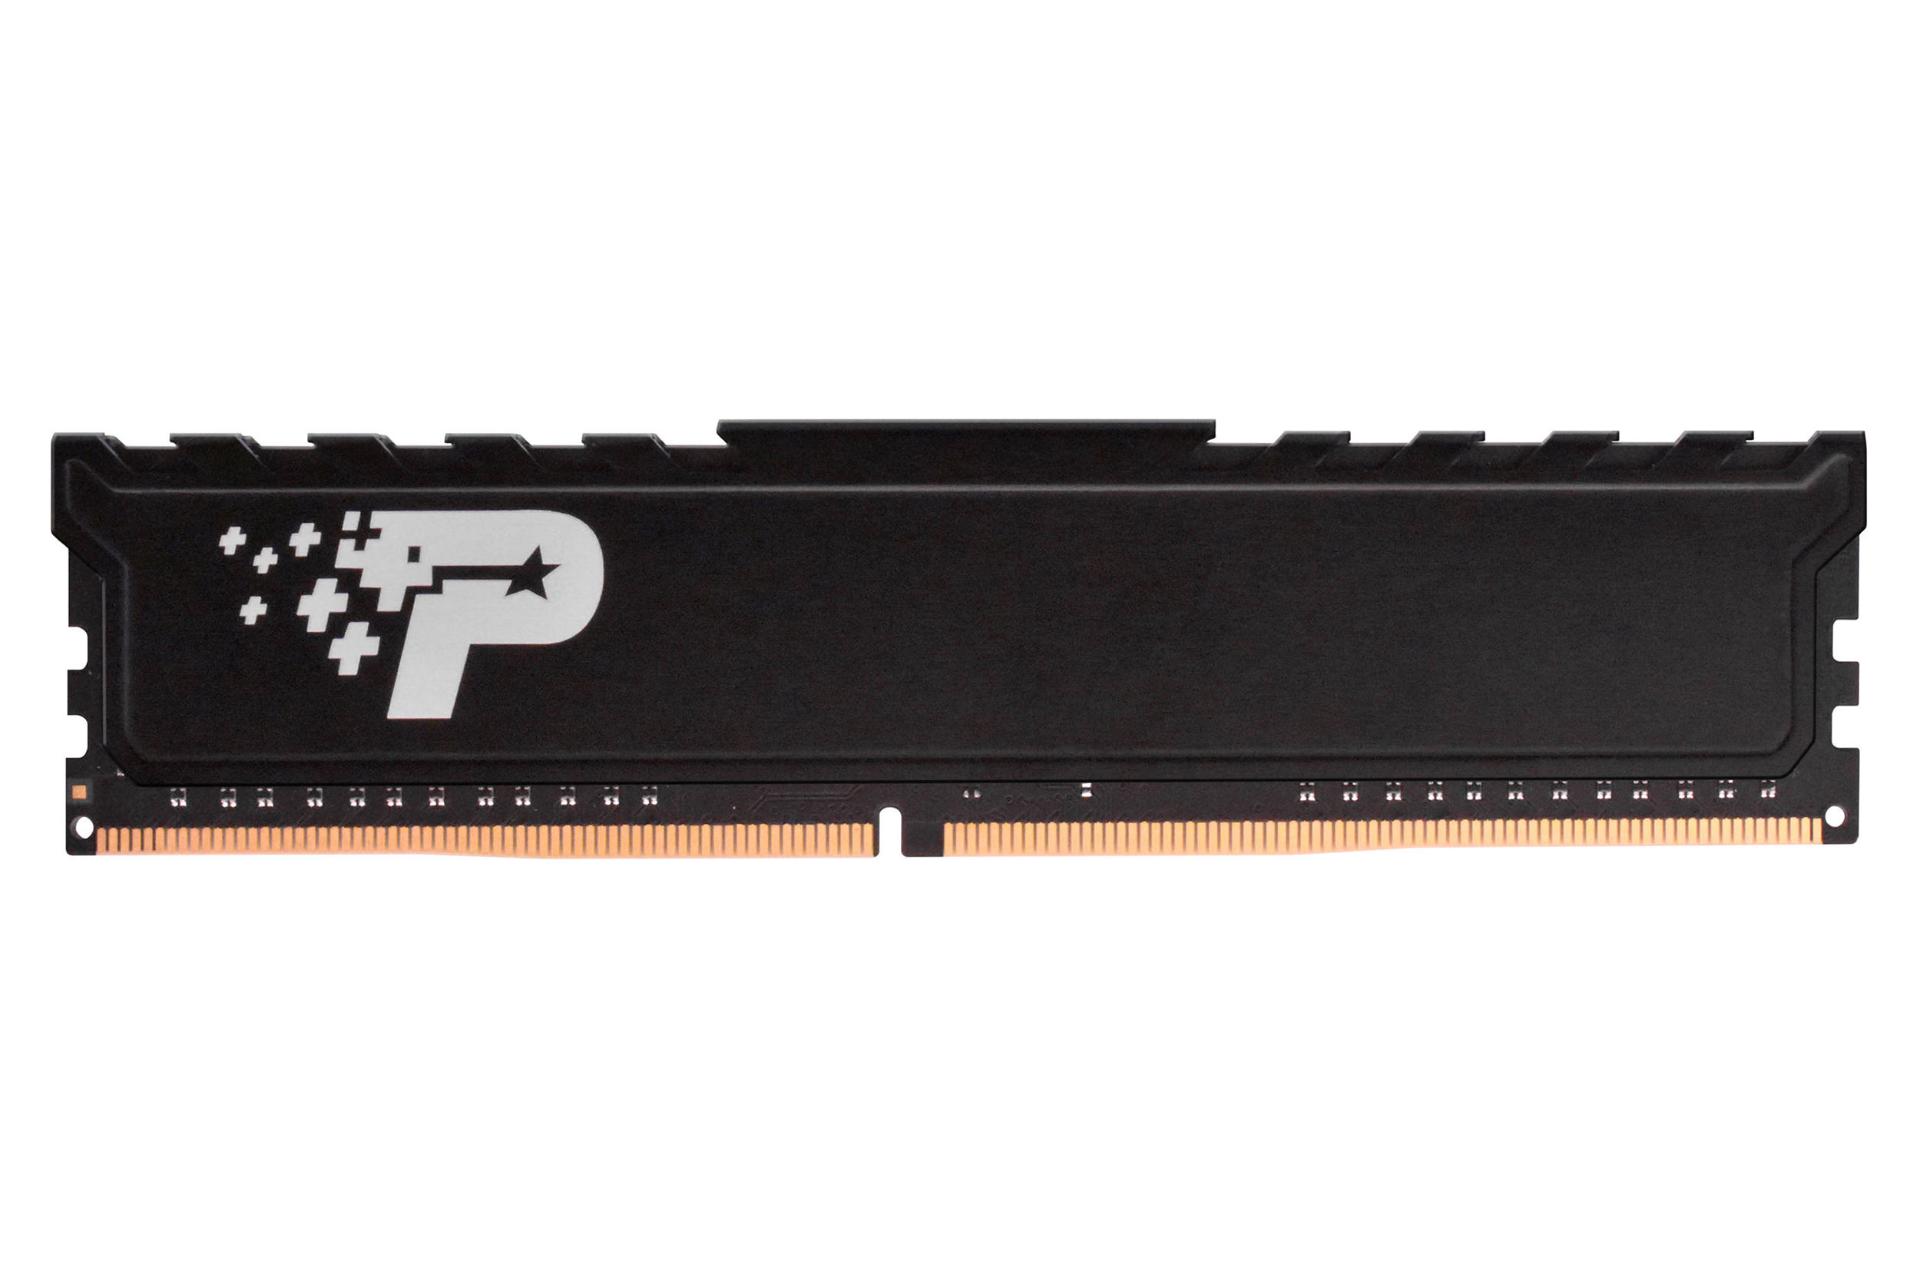 نمای جلوی رم پاتریوت Signature Premium ظرفیت 8 گیگابایت از نوع DDR4-2666